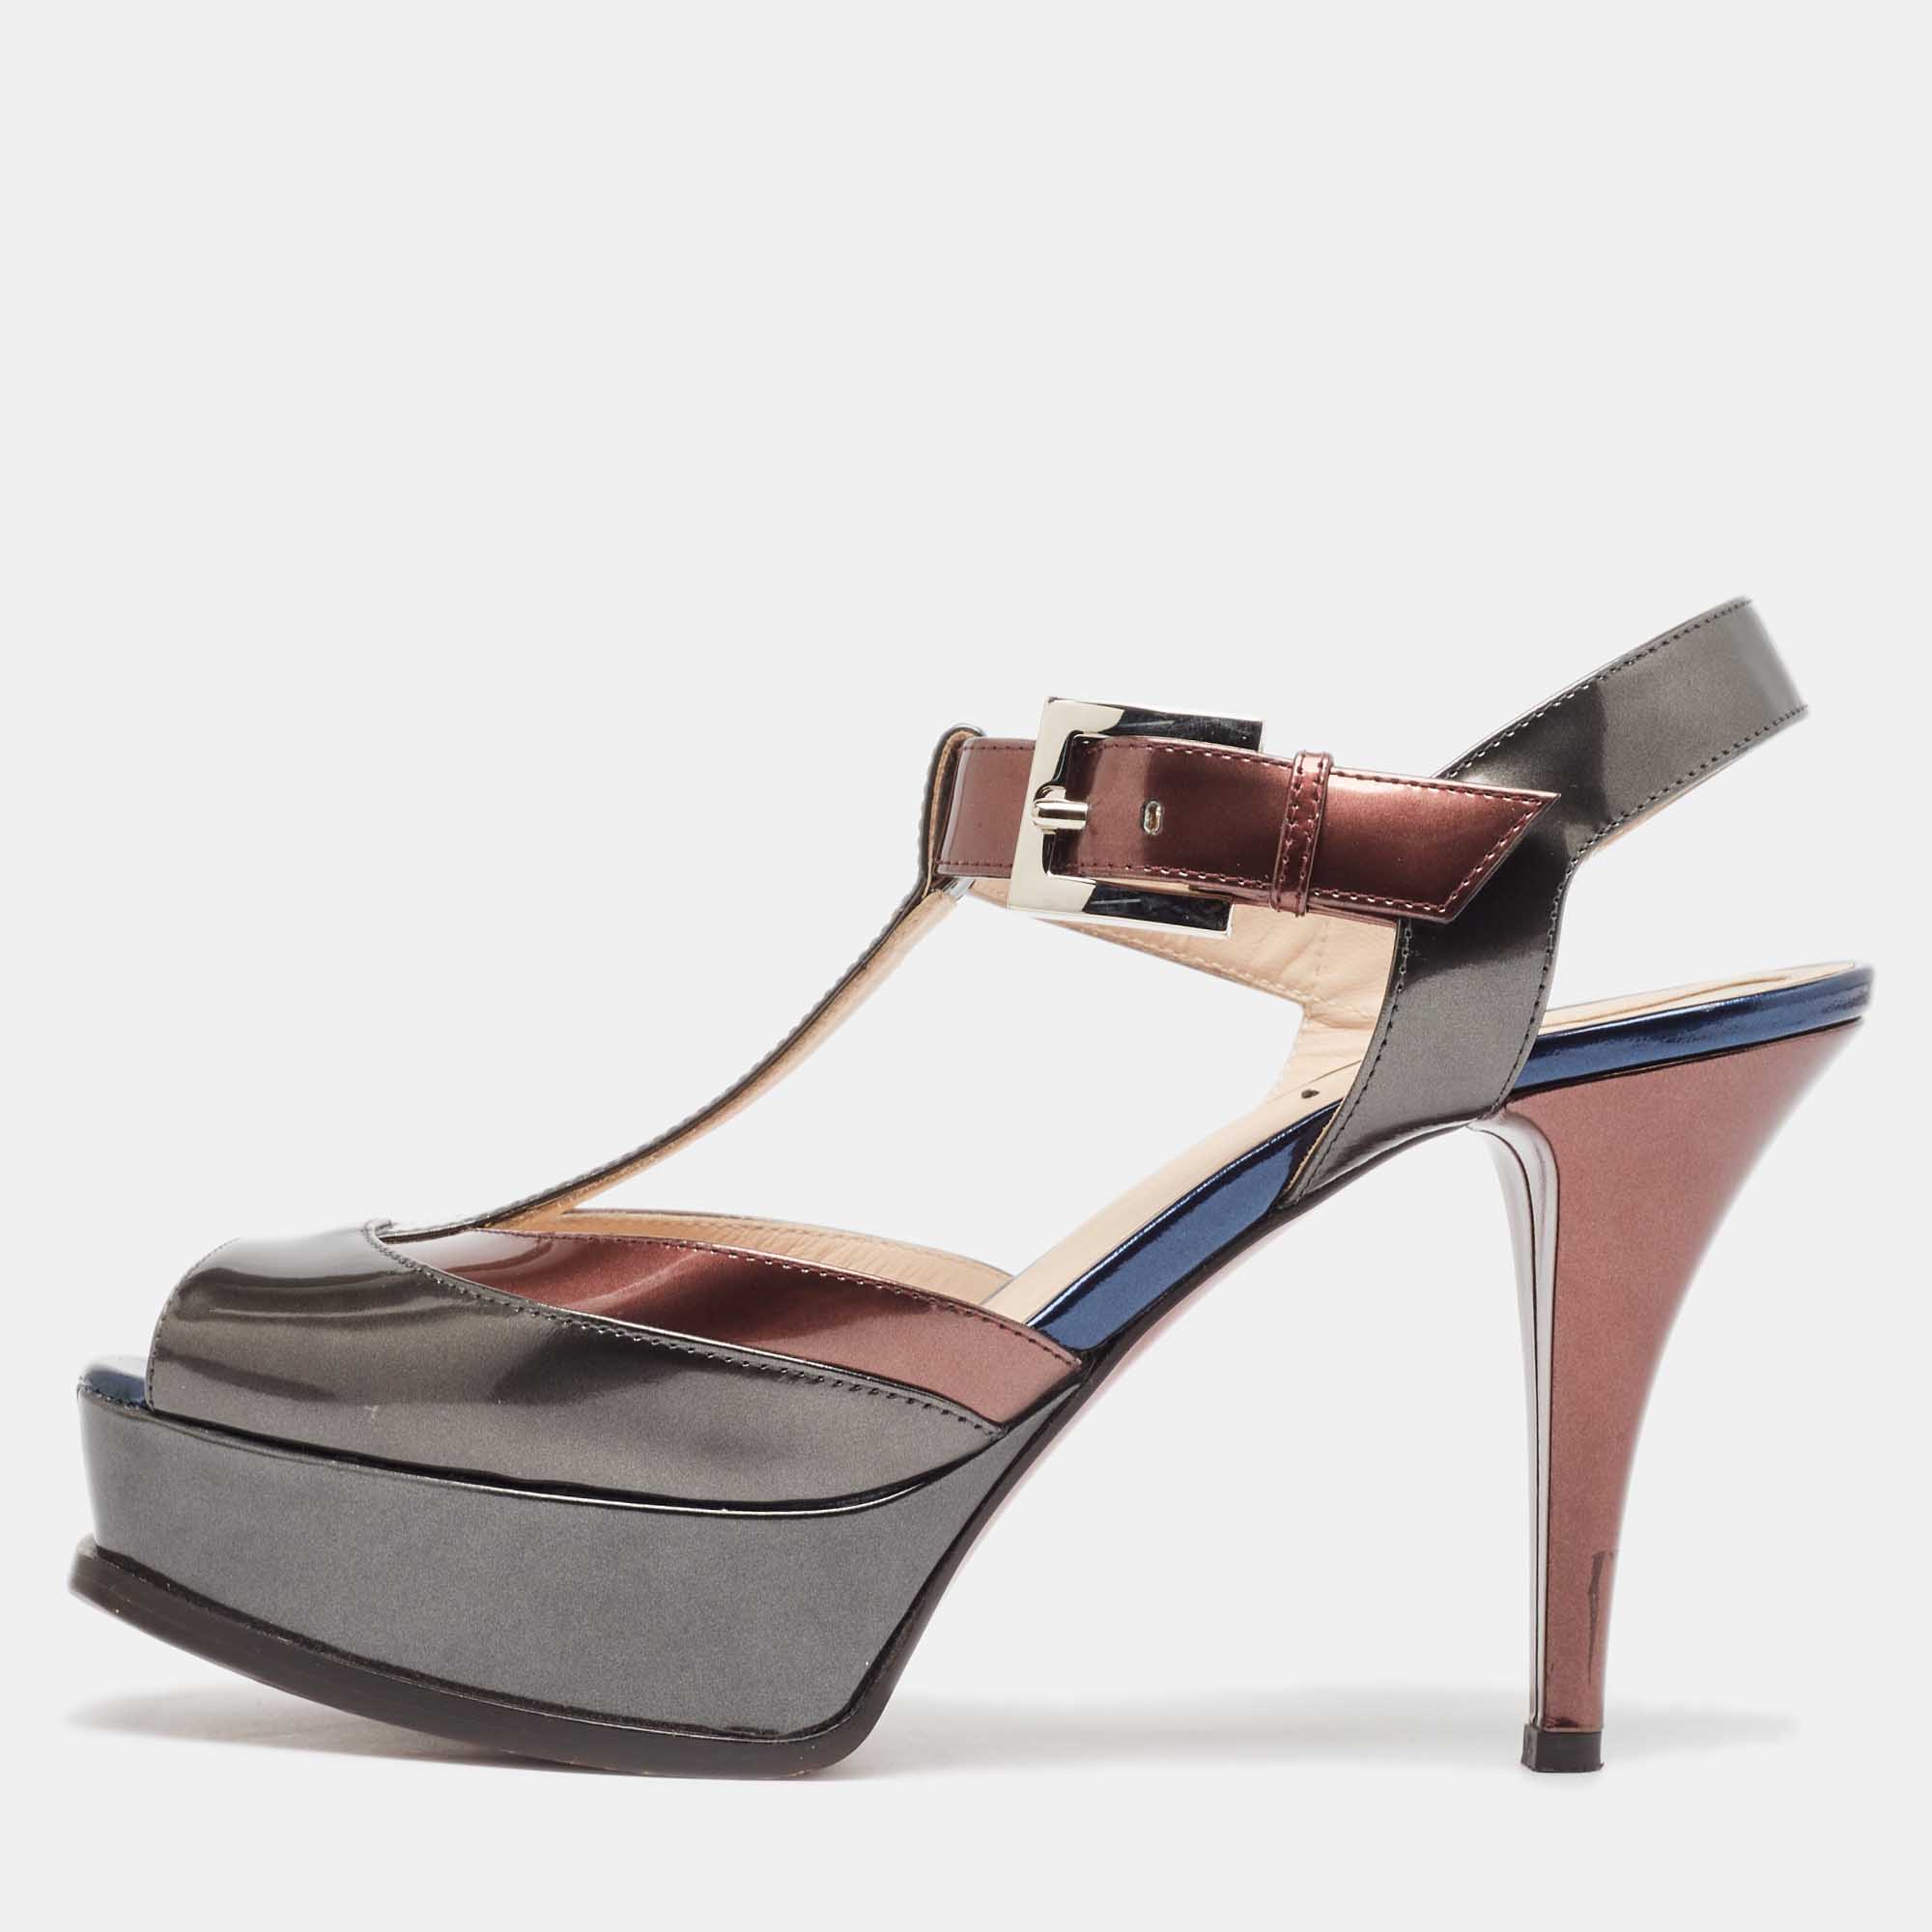 Fendi tricolor metallic leather platform t-bar ankle strap sandals size 39